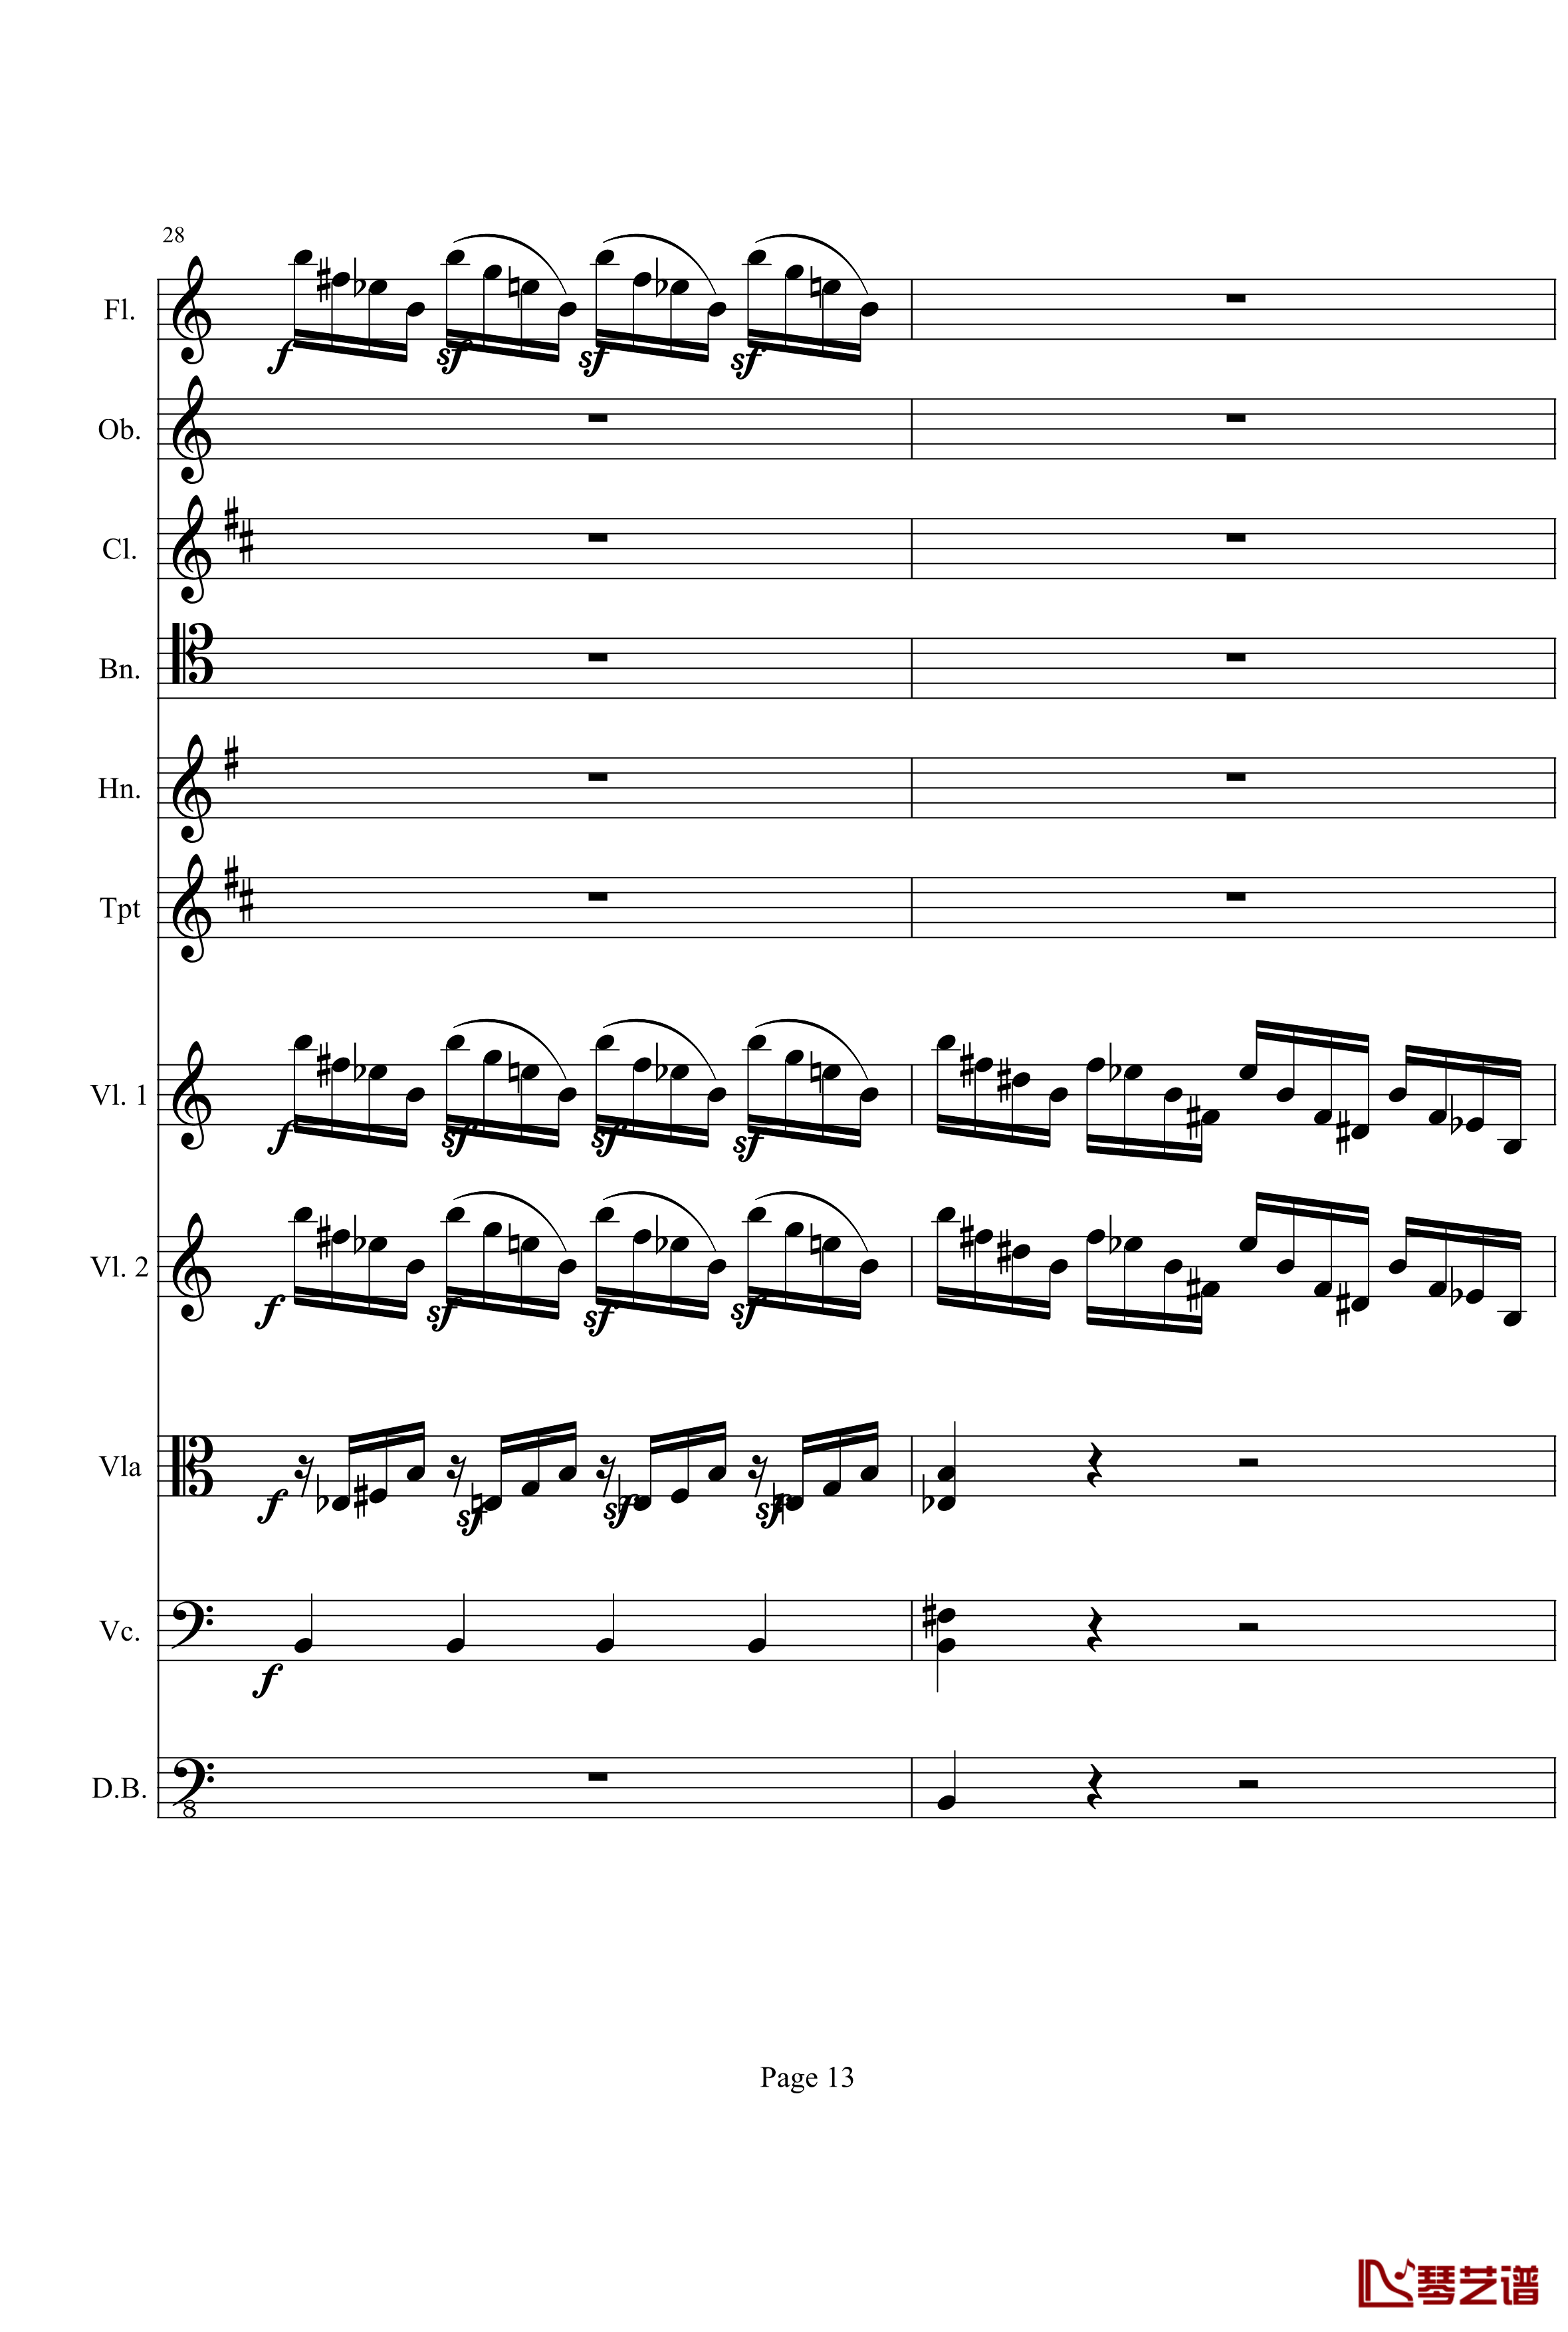 奏鸣曲之交响钢琴谱-第21-Ⅰ-贝多芬-beethoven13